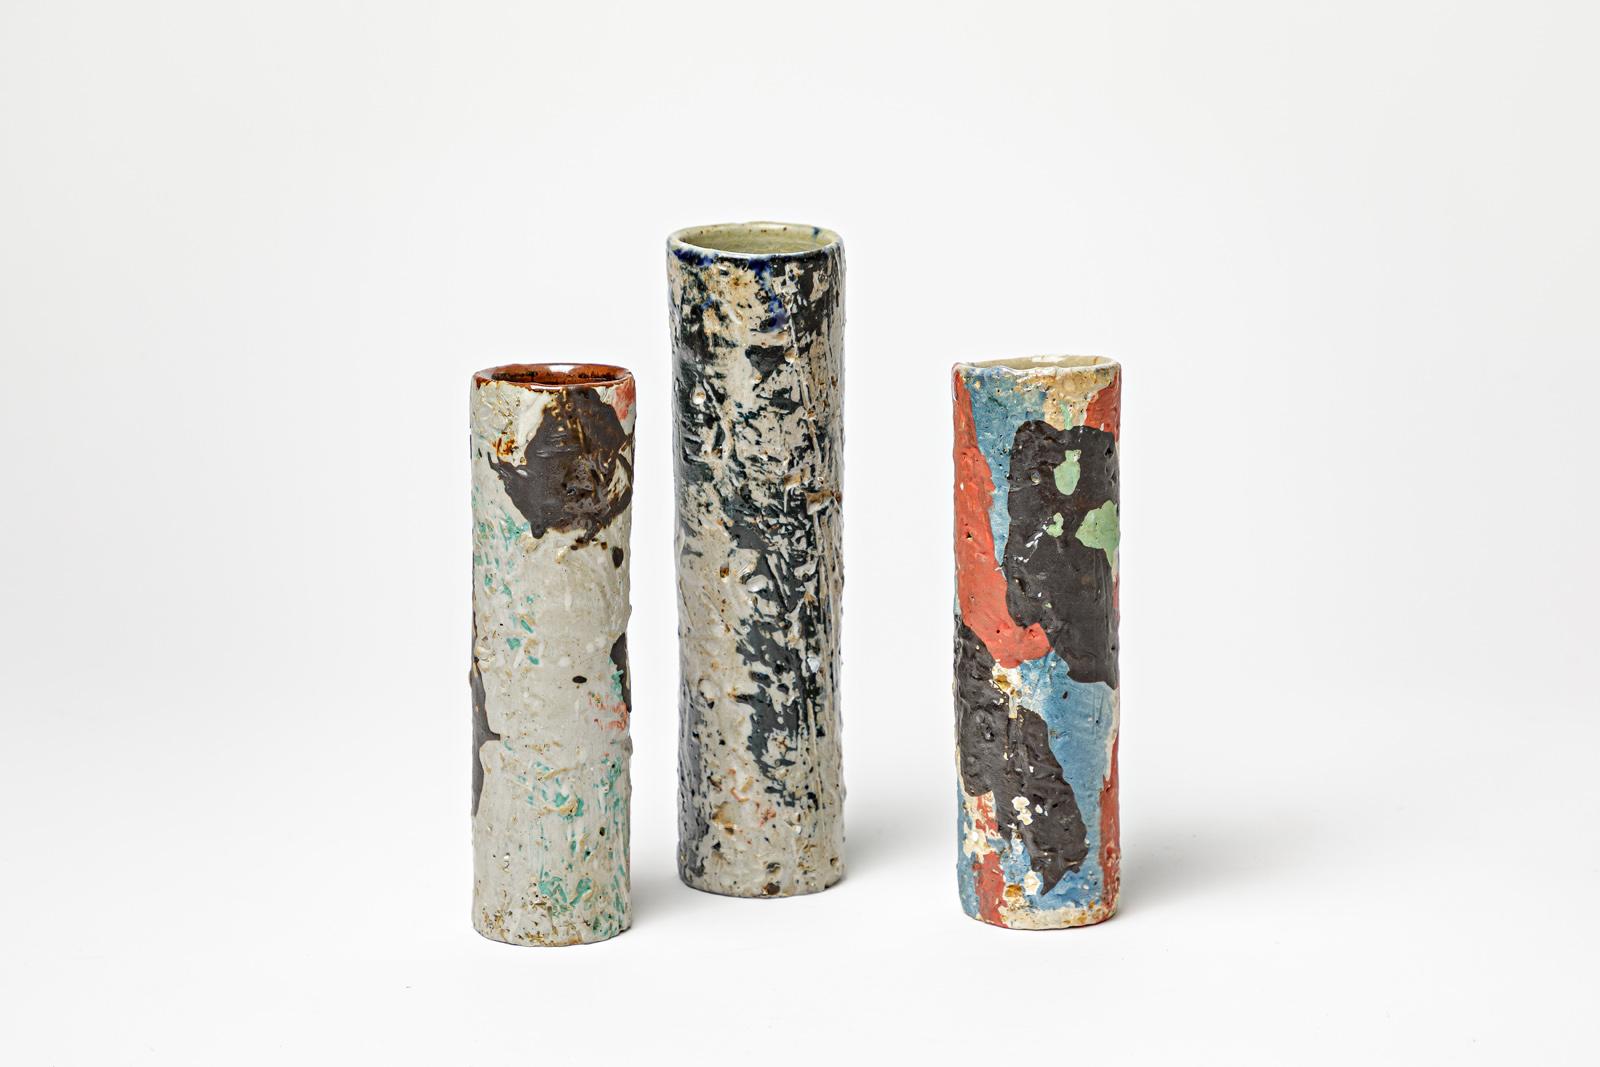 David Whitehead

Réalisé vers 2010

Ensemble de trois vases en céramique signés par David Whitehead

Original en parfait état

Hauteur du numéro un : 16 cm
Numéro deux hauteur 16 cm
Numéro 3 hauteur 19 cm